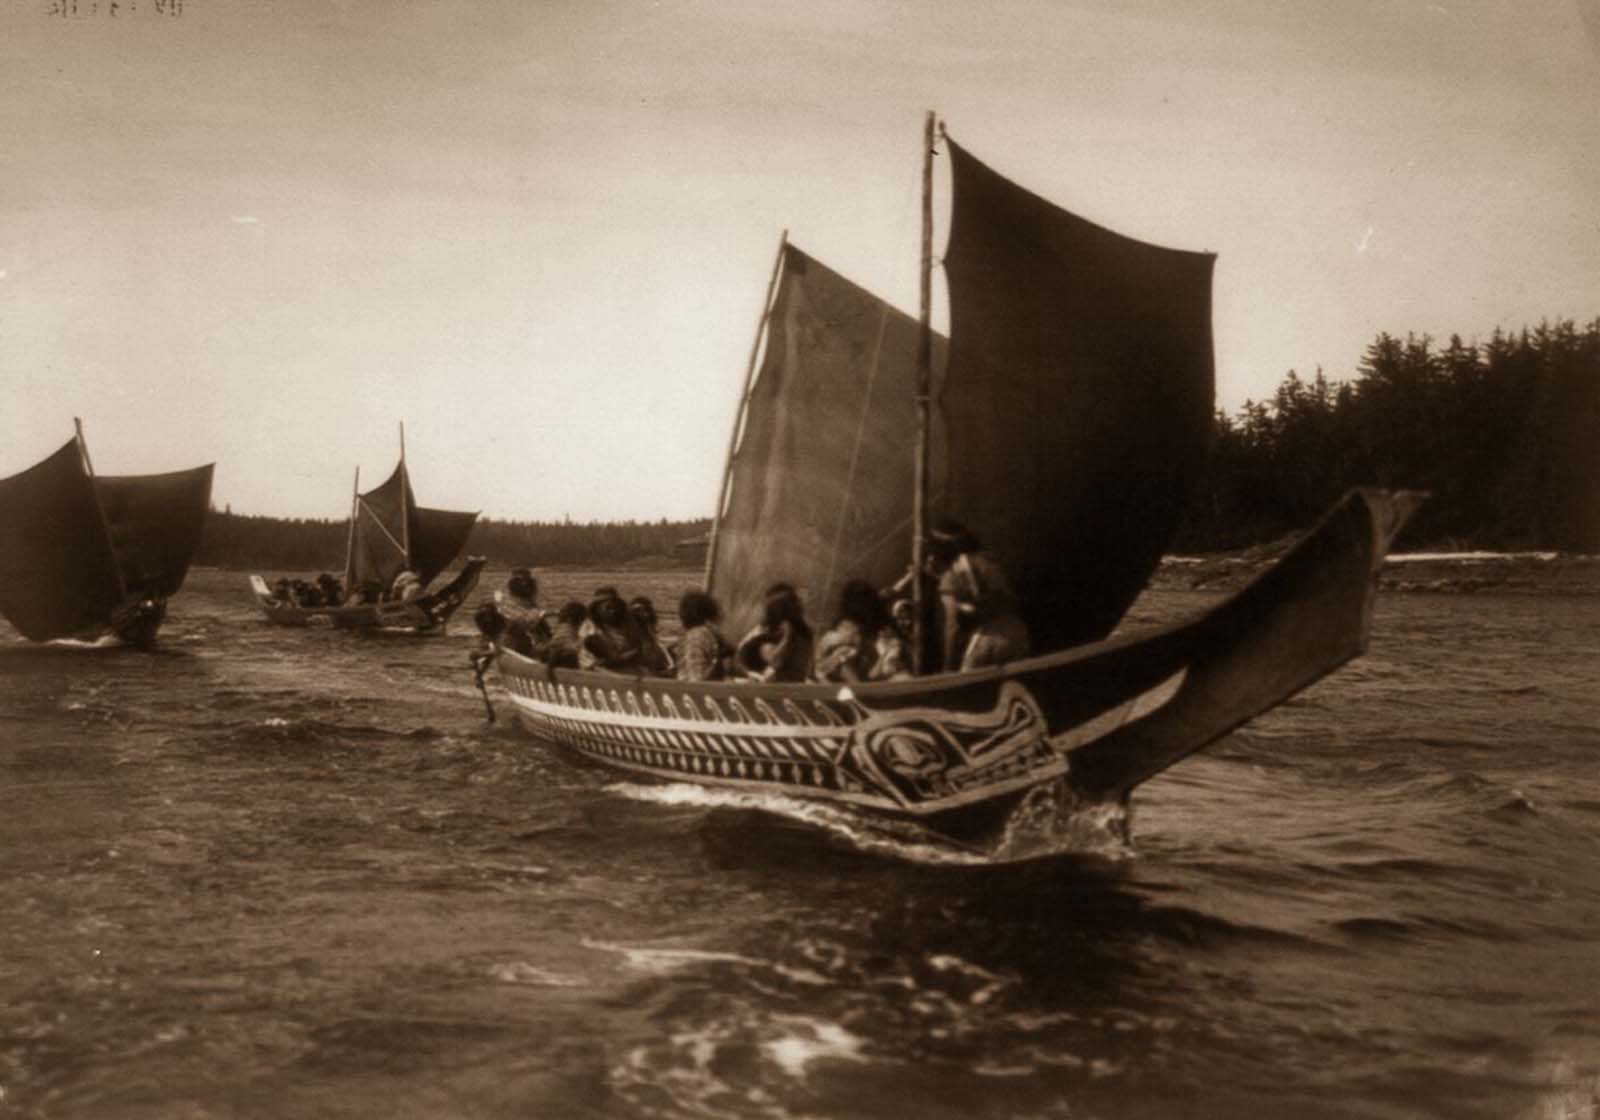 Kwakiutl people in canoes in British Columbia. 1914.